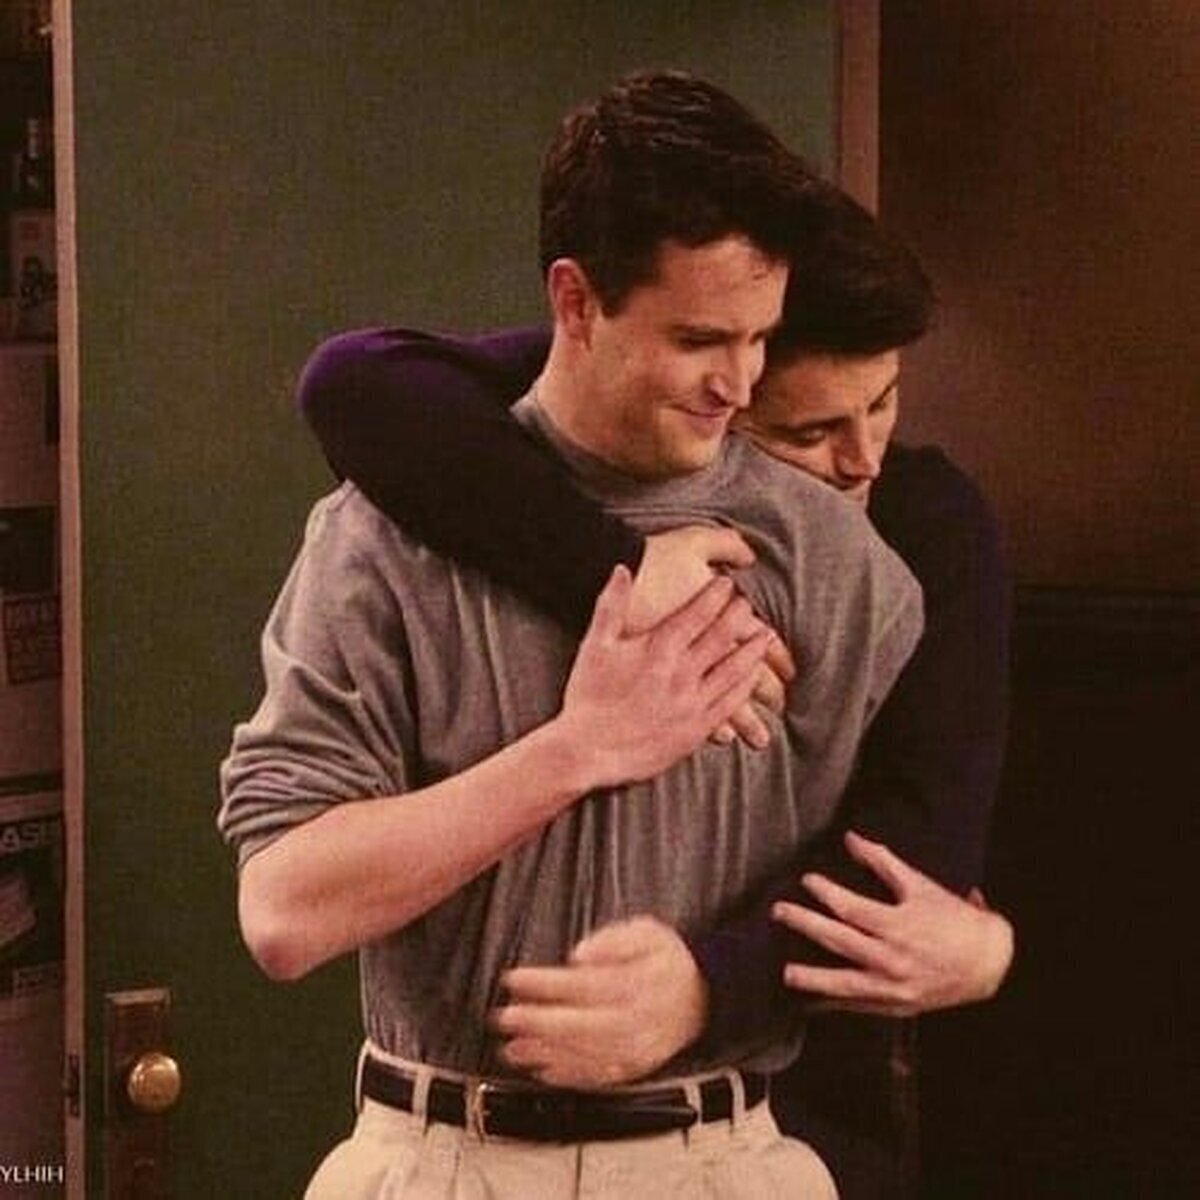 Durante el transcurso de la serie “Friends”, Joey llega a deberle a Chandler 114.260 dólares. El valor de la auténtica amistad.